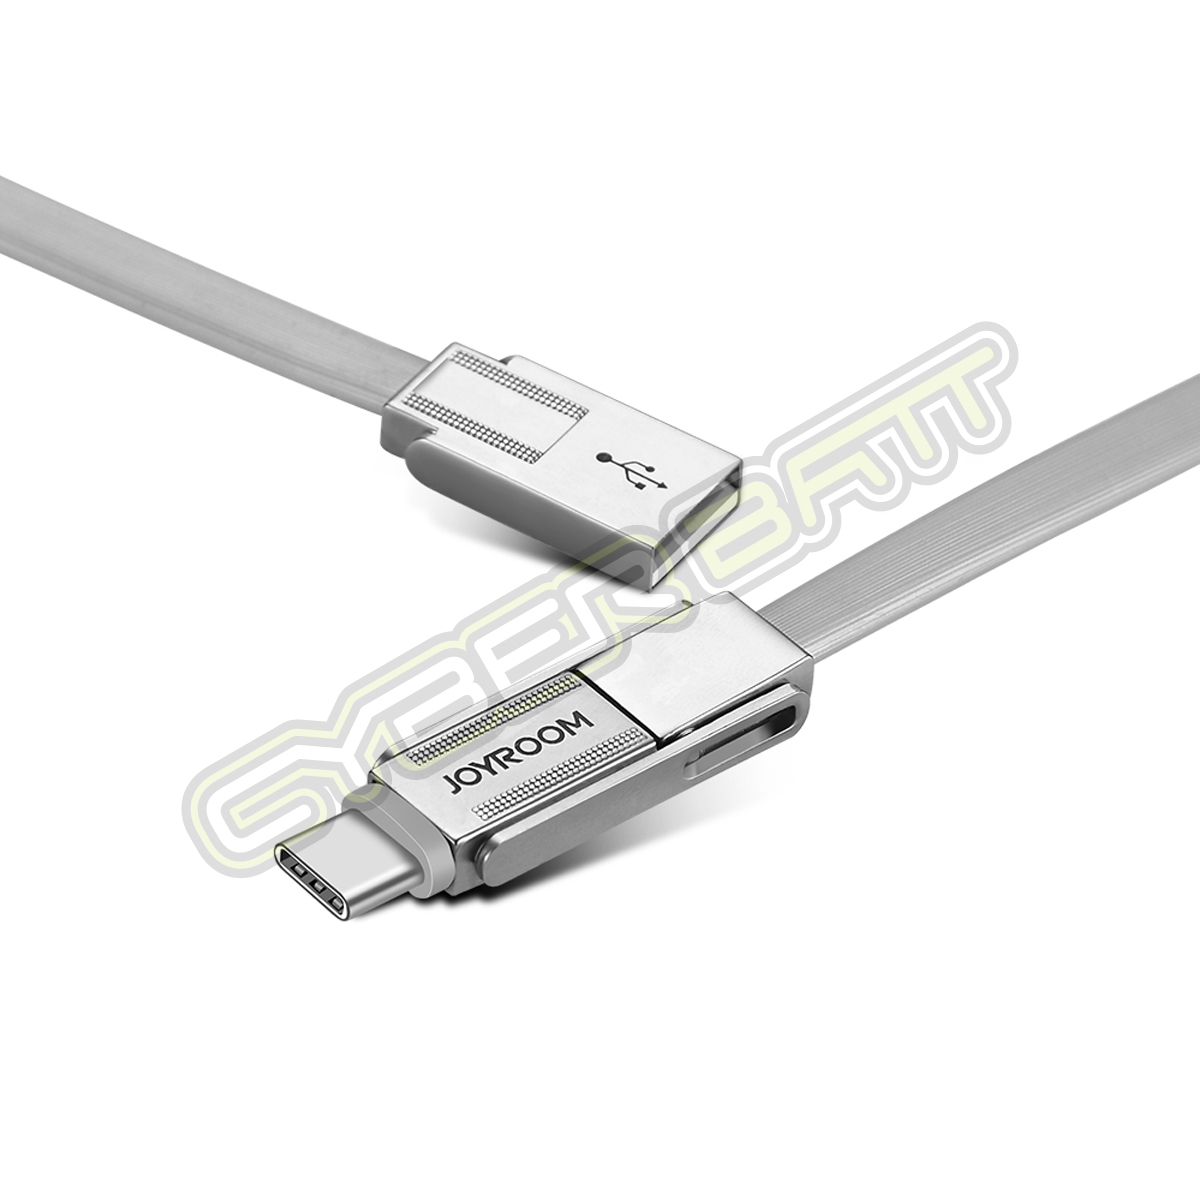 CHARGING CABLE S-M338 3-in-1 Lightning 8Pin + Micro USB + Type-C Data Joyroom (Tarnish)